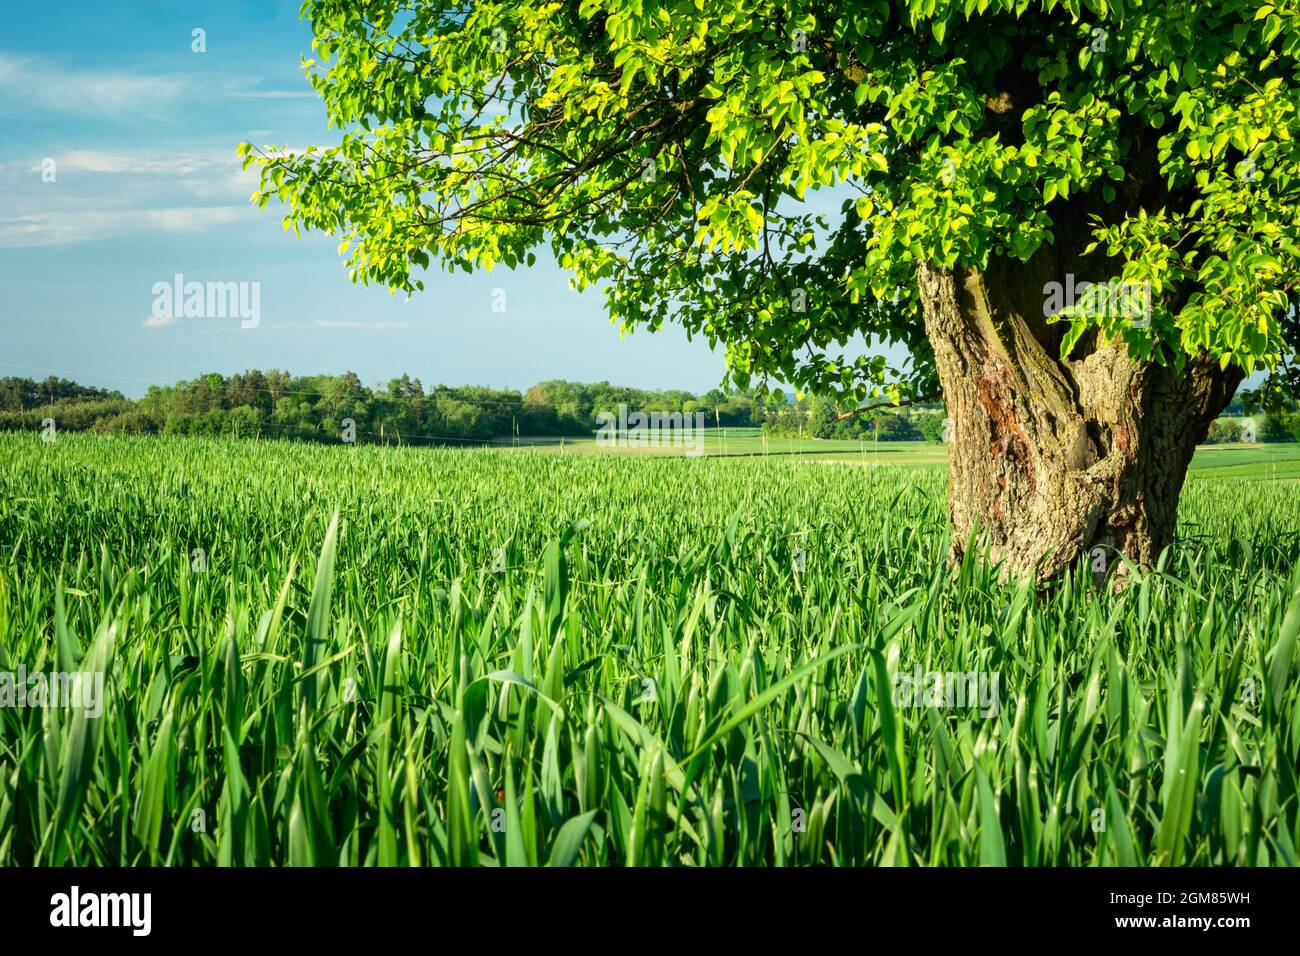 Ein großer Laubbaum, der auf einem grünen Feld wächst, Staw, Polen Stockfoto